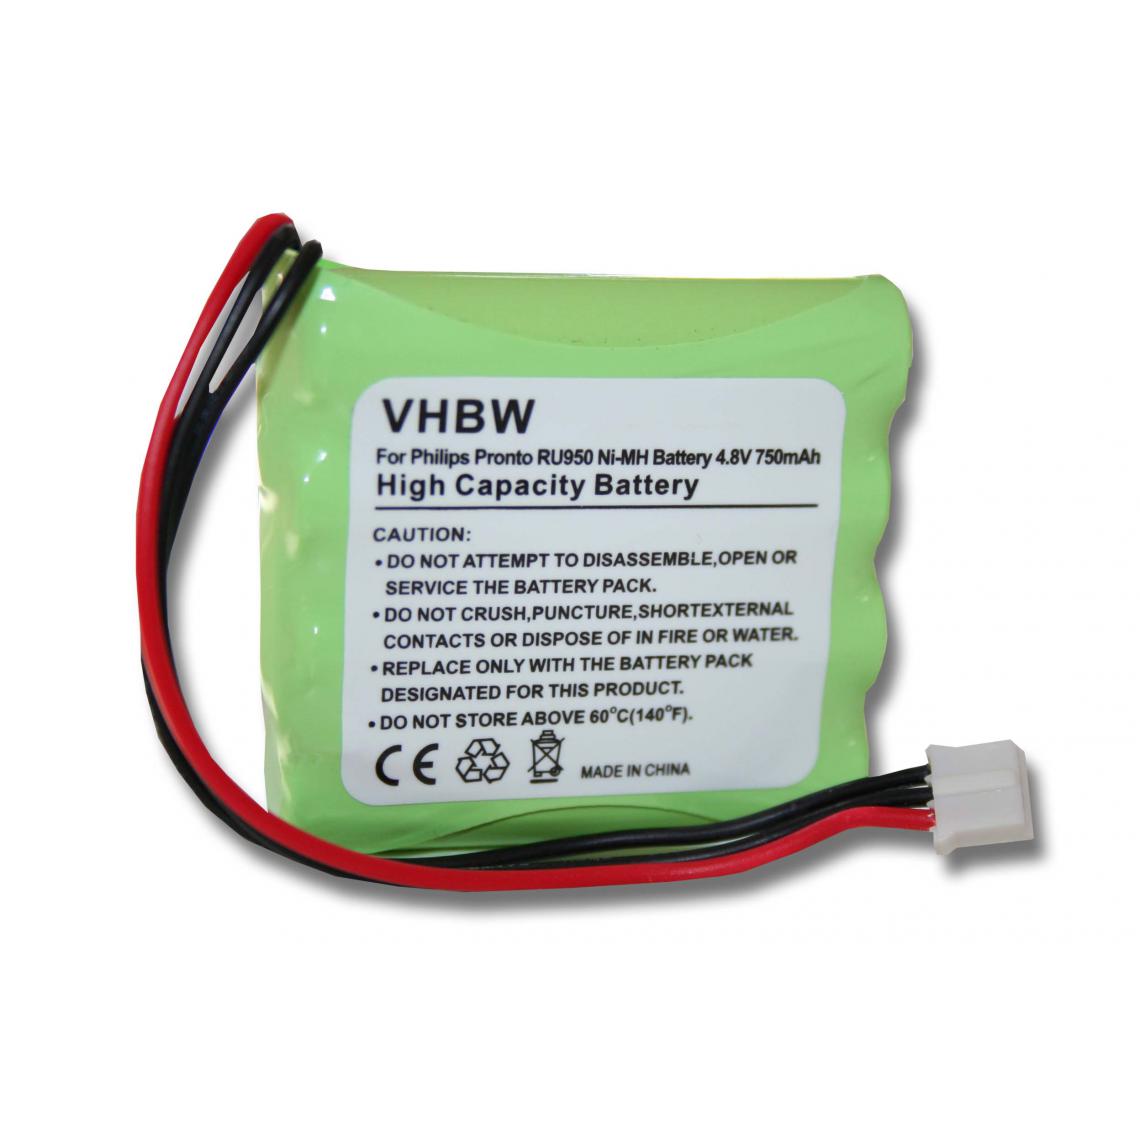 Vhbw - vhbw batterie remplacement pour Philips HHR-60AAA/F4, 2422 526 00148, 8100 911 02101 pour télécommande remote control (750mAh, 4,8V, NiMH) - Autre appareil de mesure